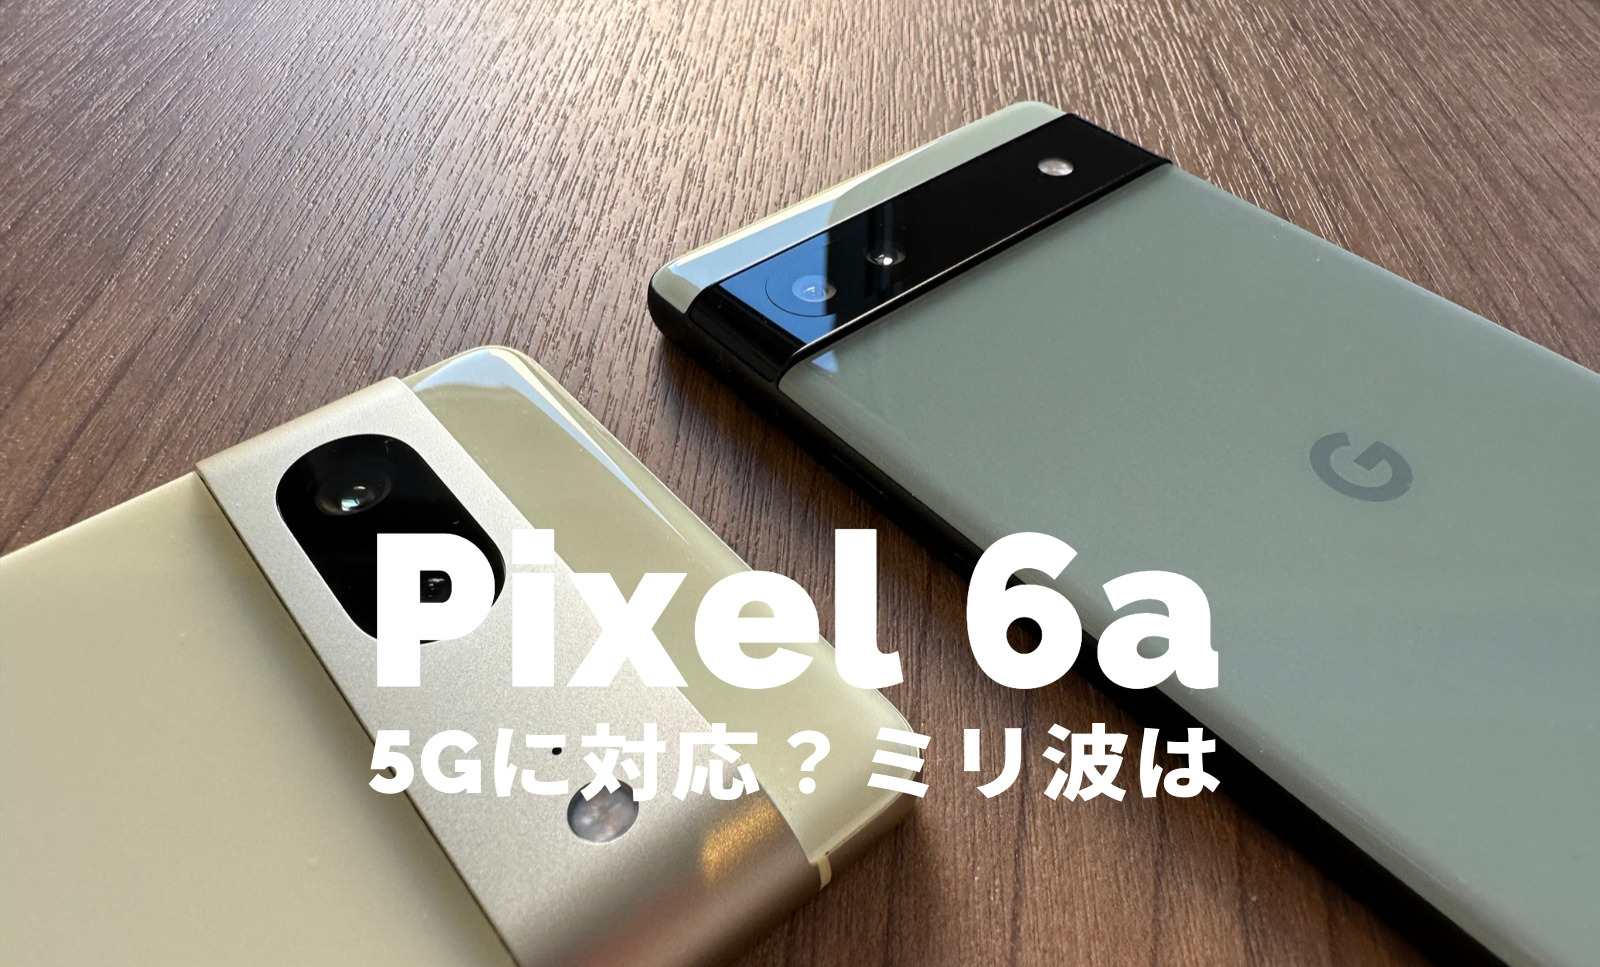 Google Pixel 6aは5Gに対応？ミリ波やsub6で通信できる？のサムネイル画像